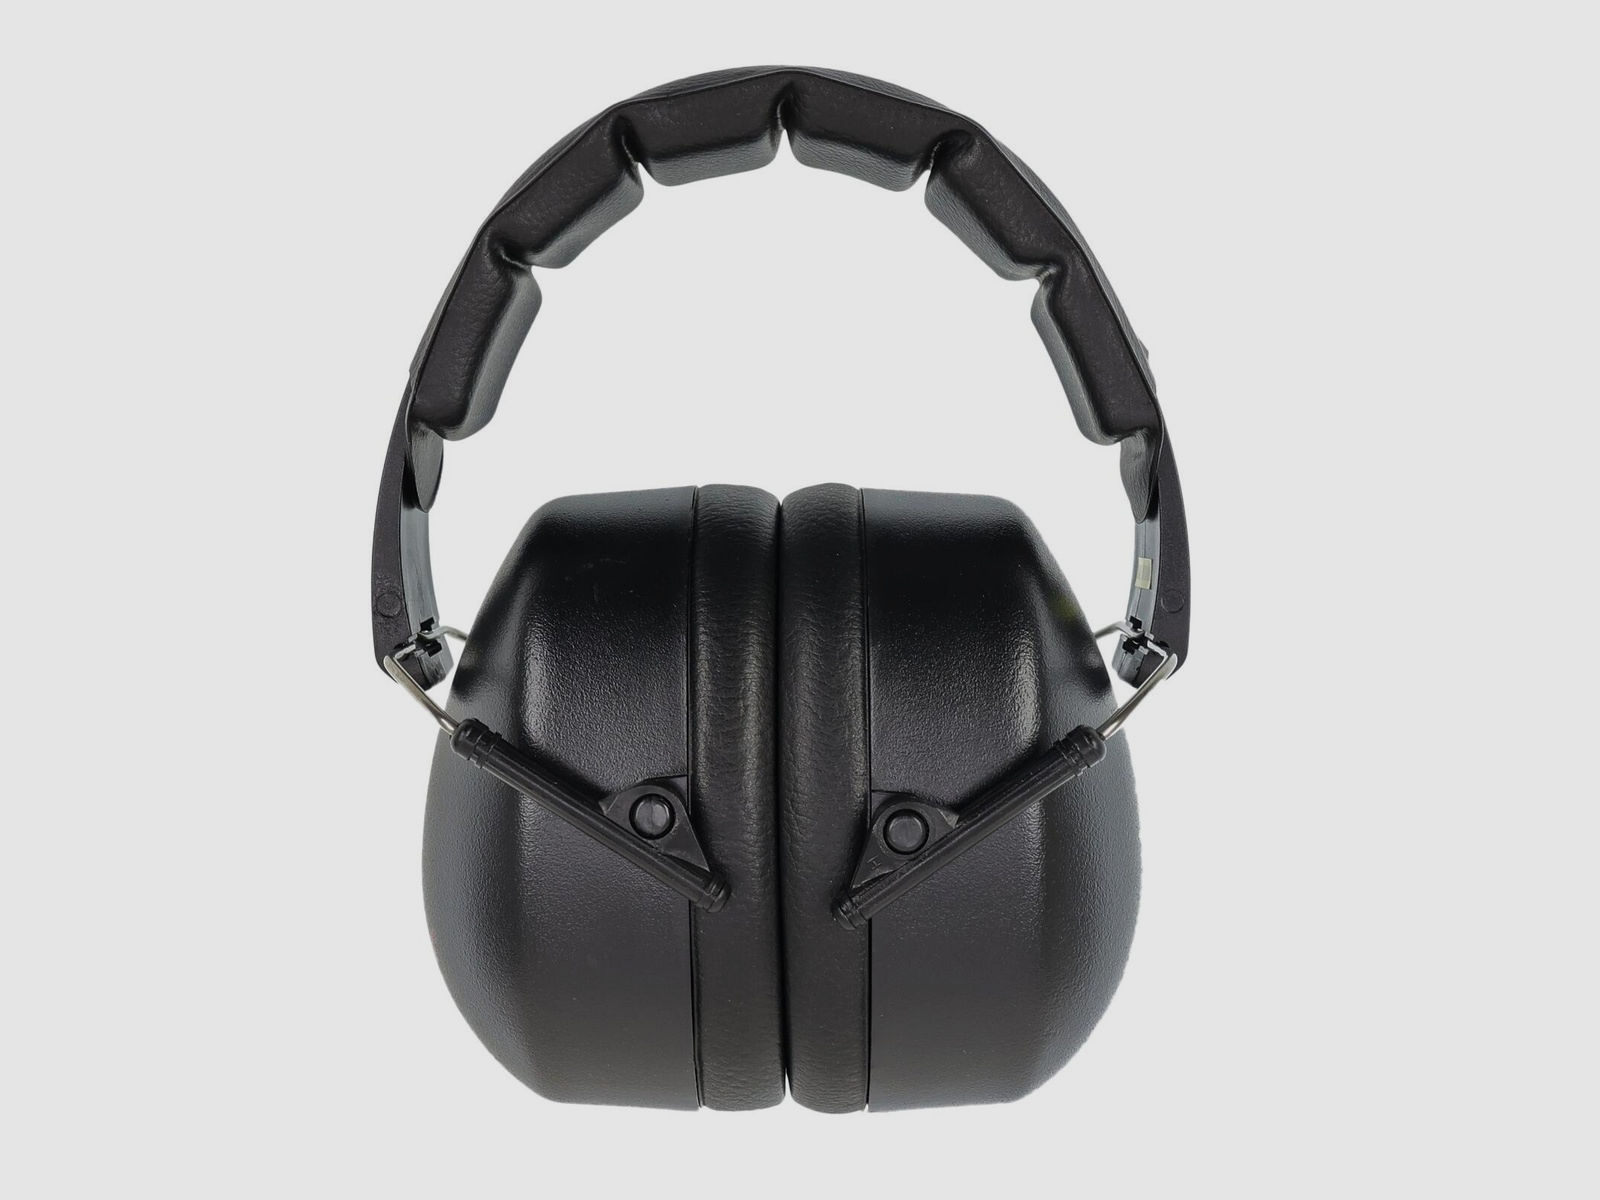 ALLEN - Kopfhörer/Gehörschutz schwarz